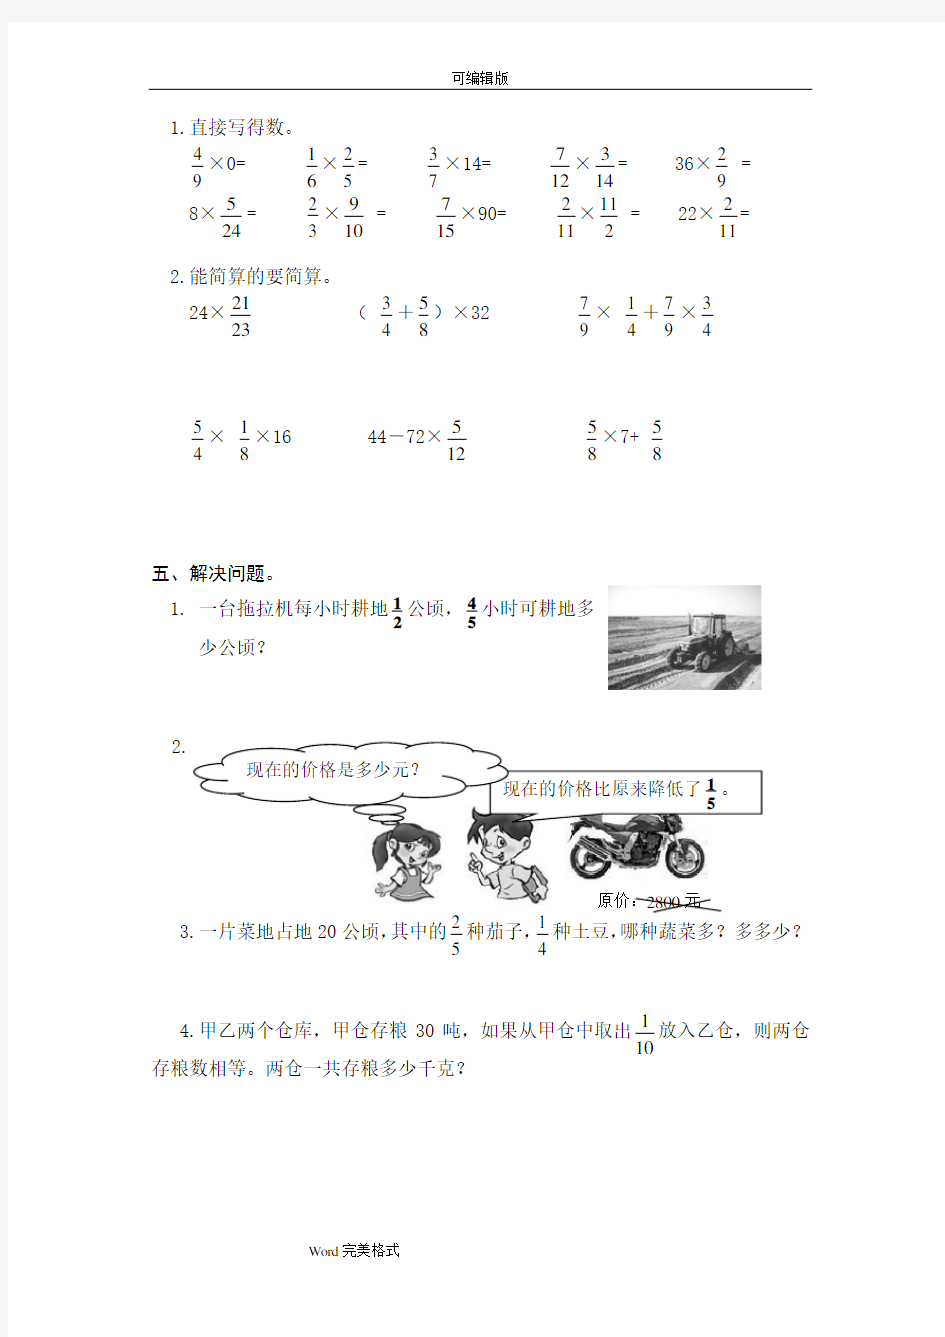 【深圳市】小学六年级数学寒假作业.全套